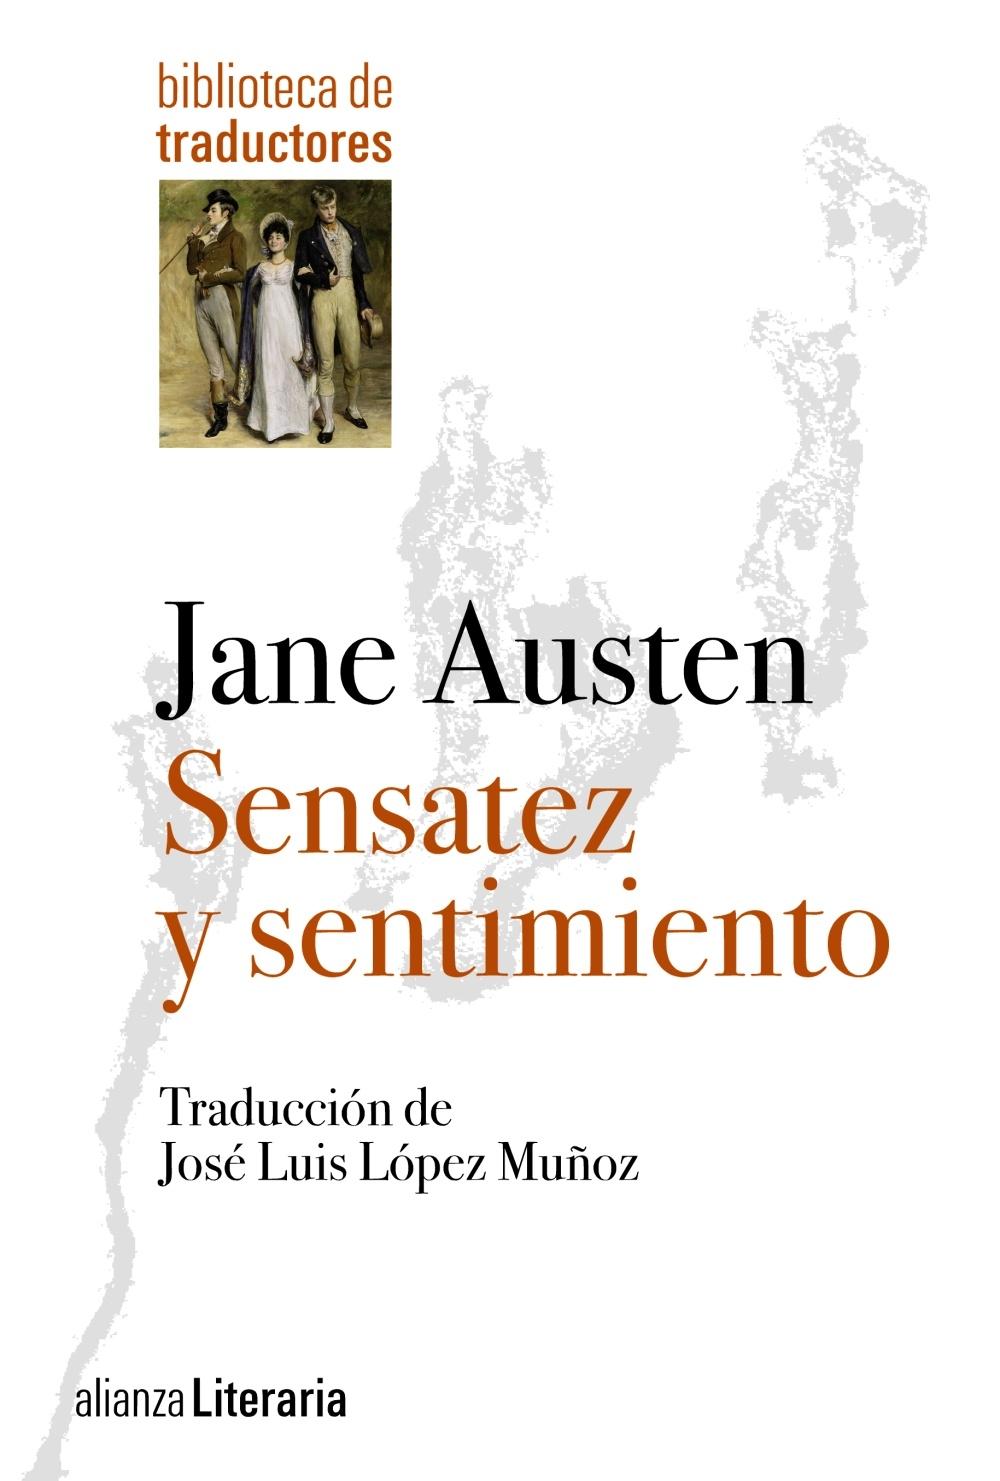 Sensatez y Sentimiento "Traducción de José Luis López Muñoz". 